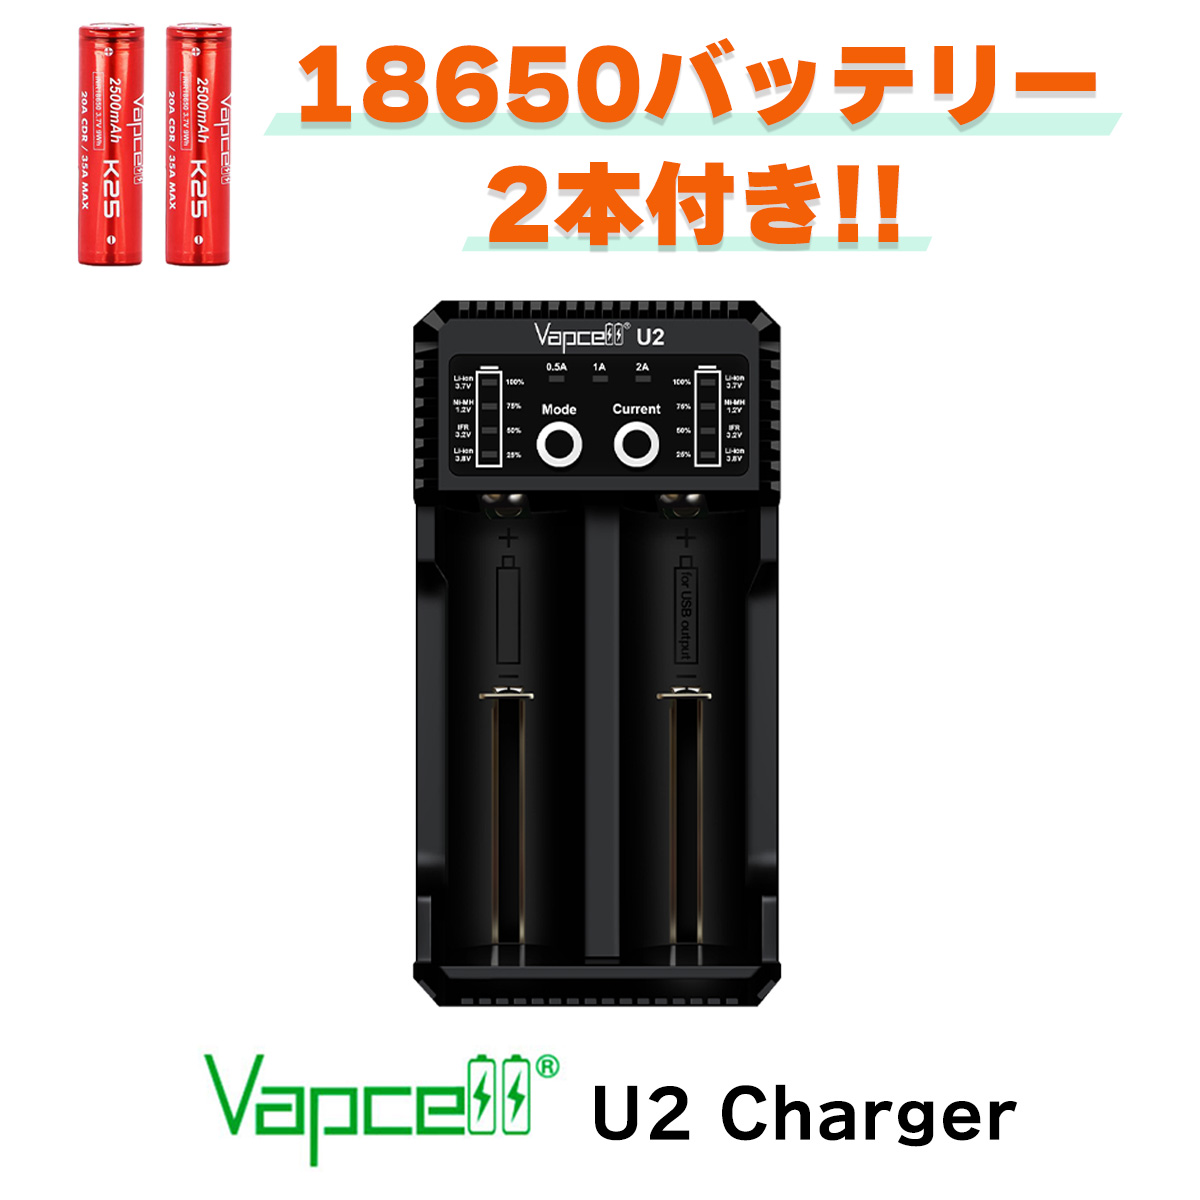  VAPCELL U2 Charger 充電器 電子タバコ vape 充電器 リチウムイオン バッテリー 電池 バップセル 18650 21700 20700 VAPCELL 充電器 バッテリー べイプ VAPE USB